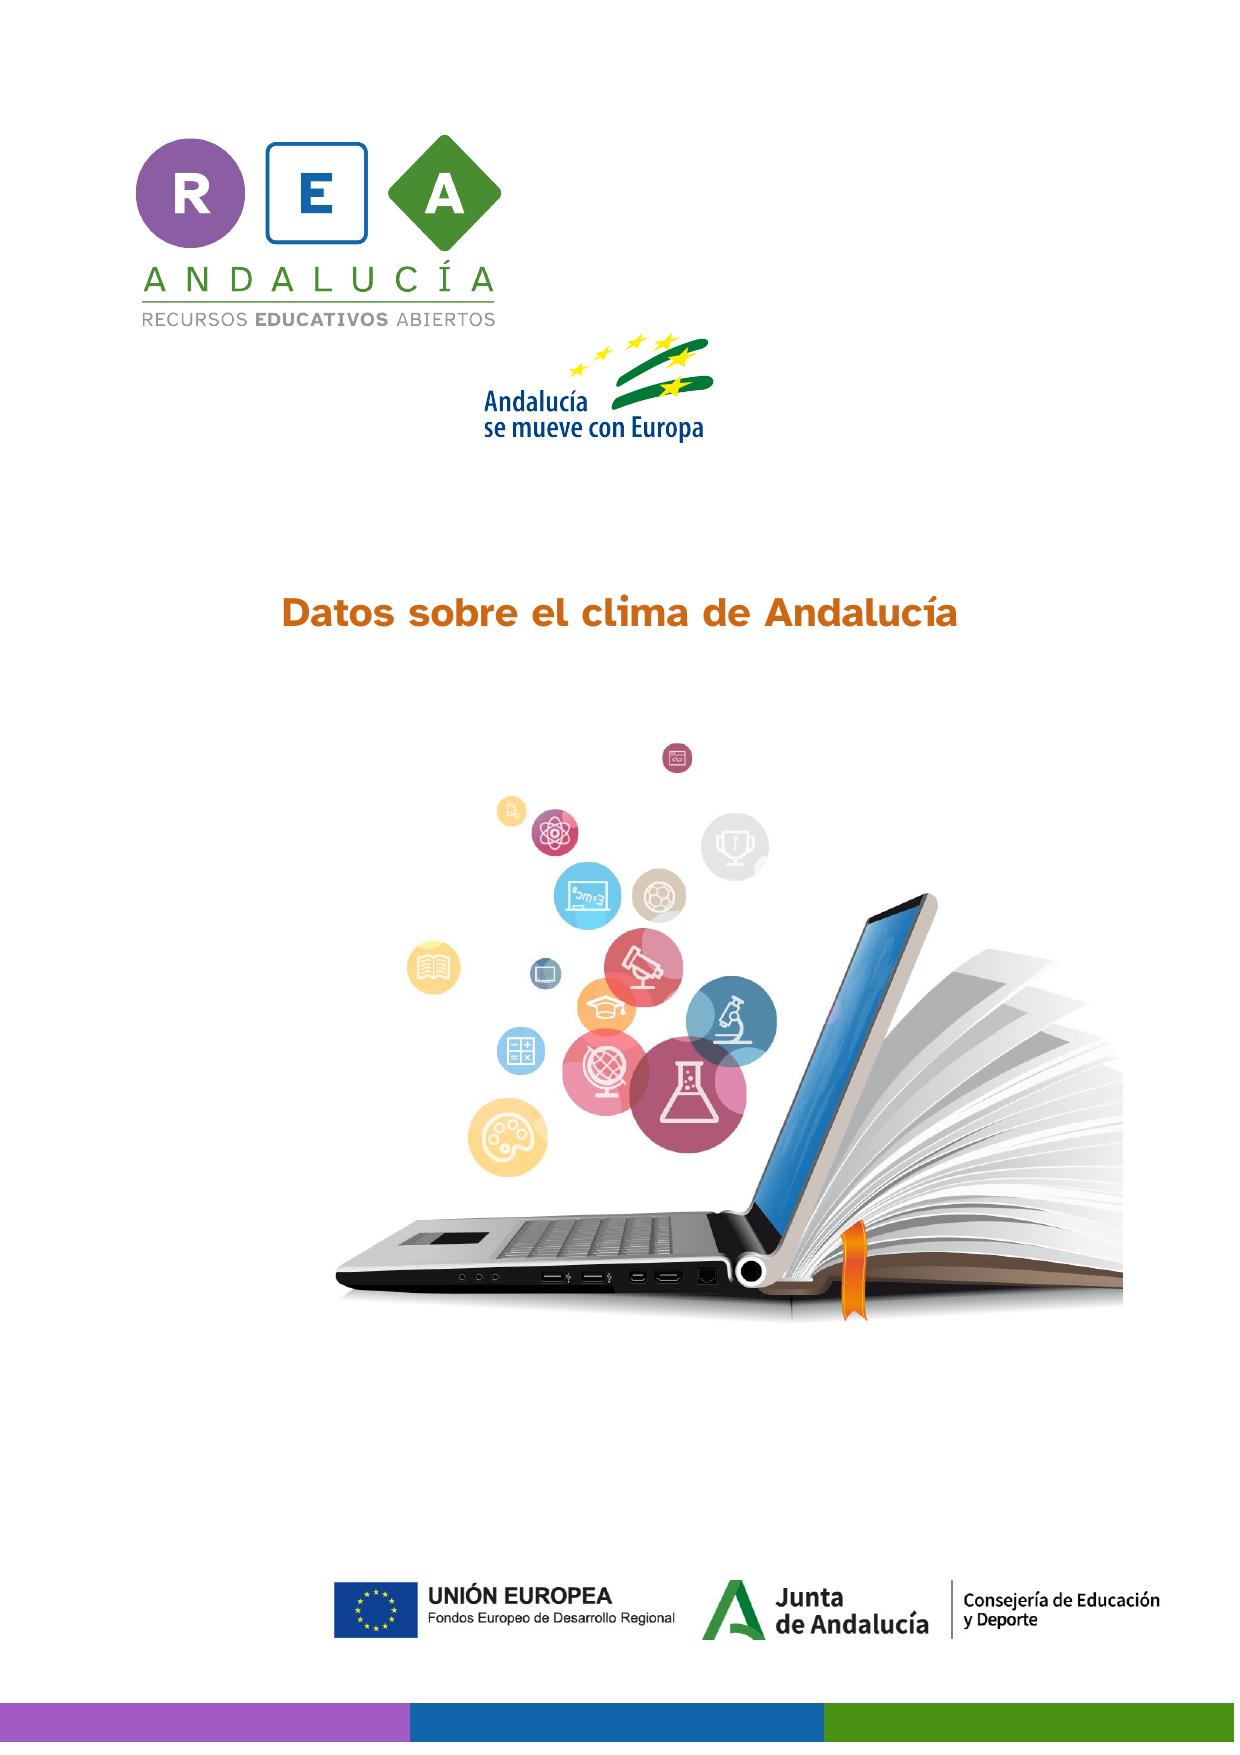 imagen perteneciente a la primera página del documento PDF Datos sobre el clima de Andalucía'